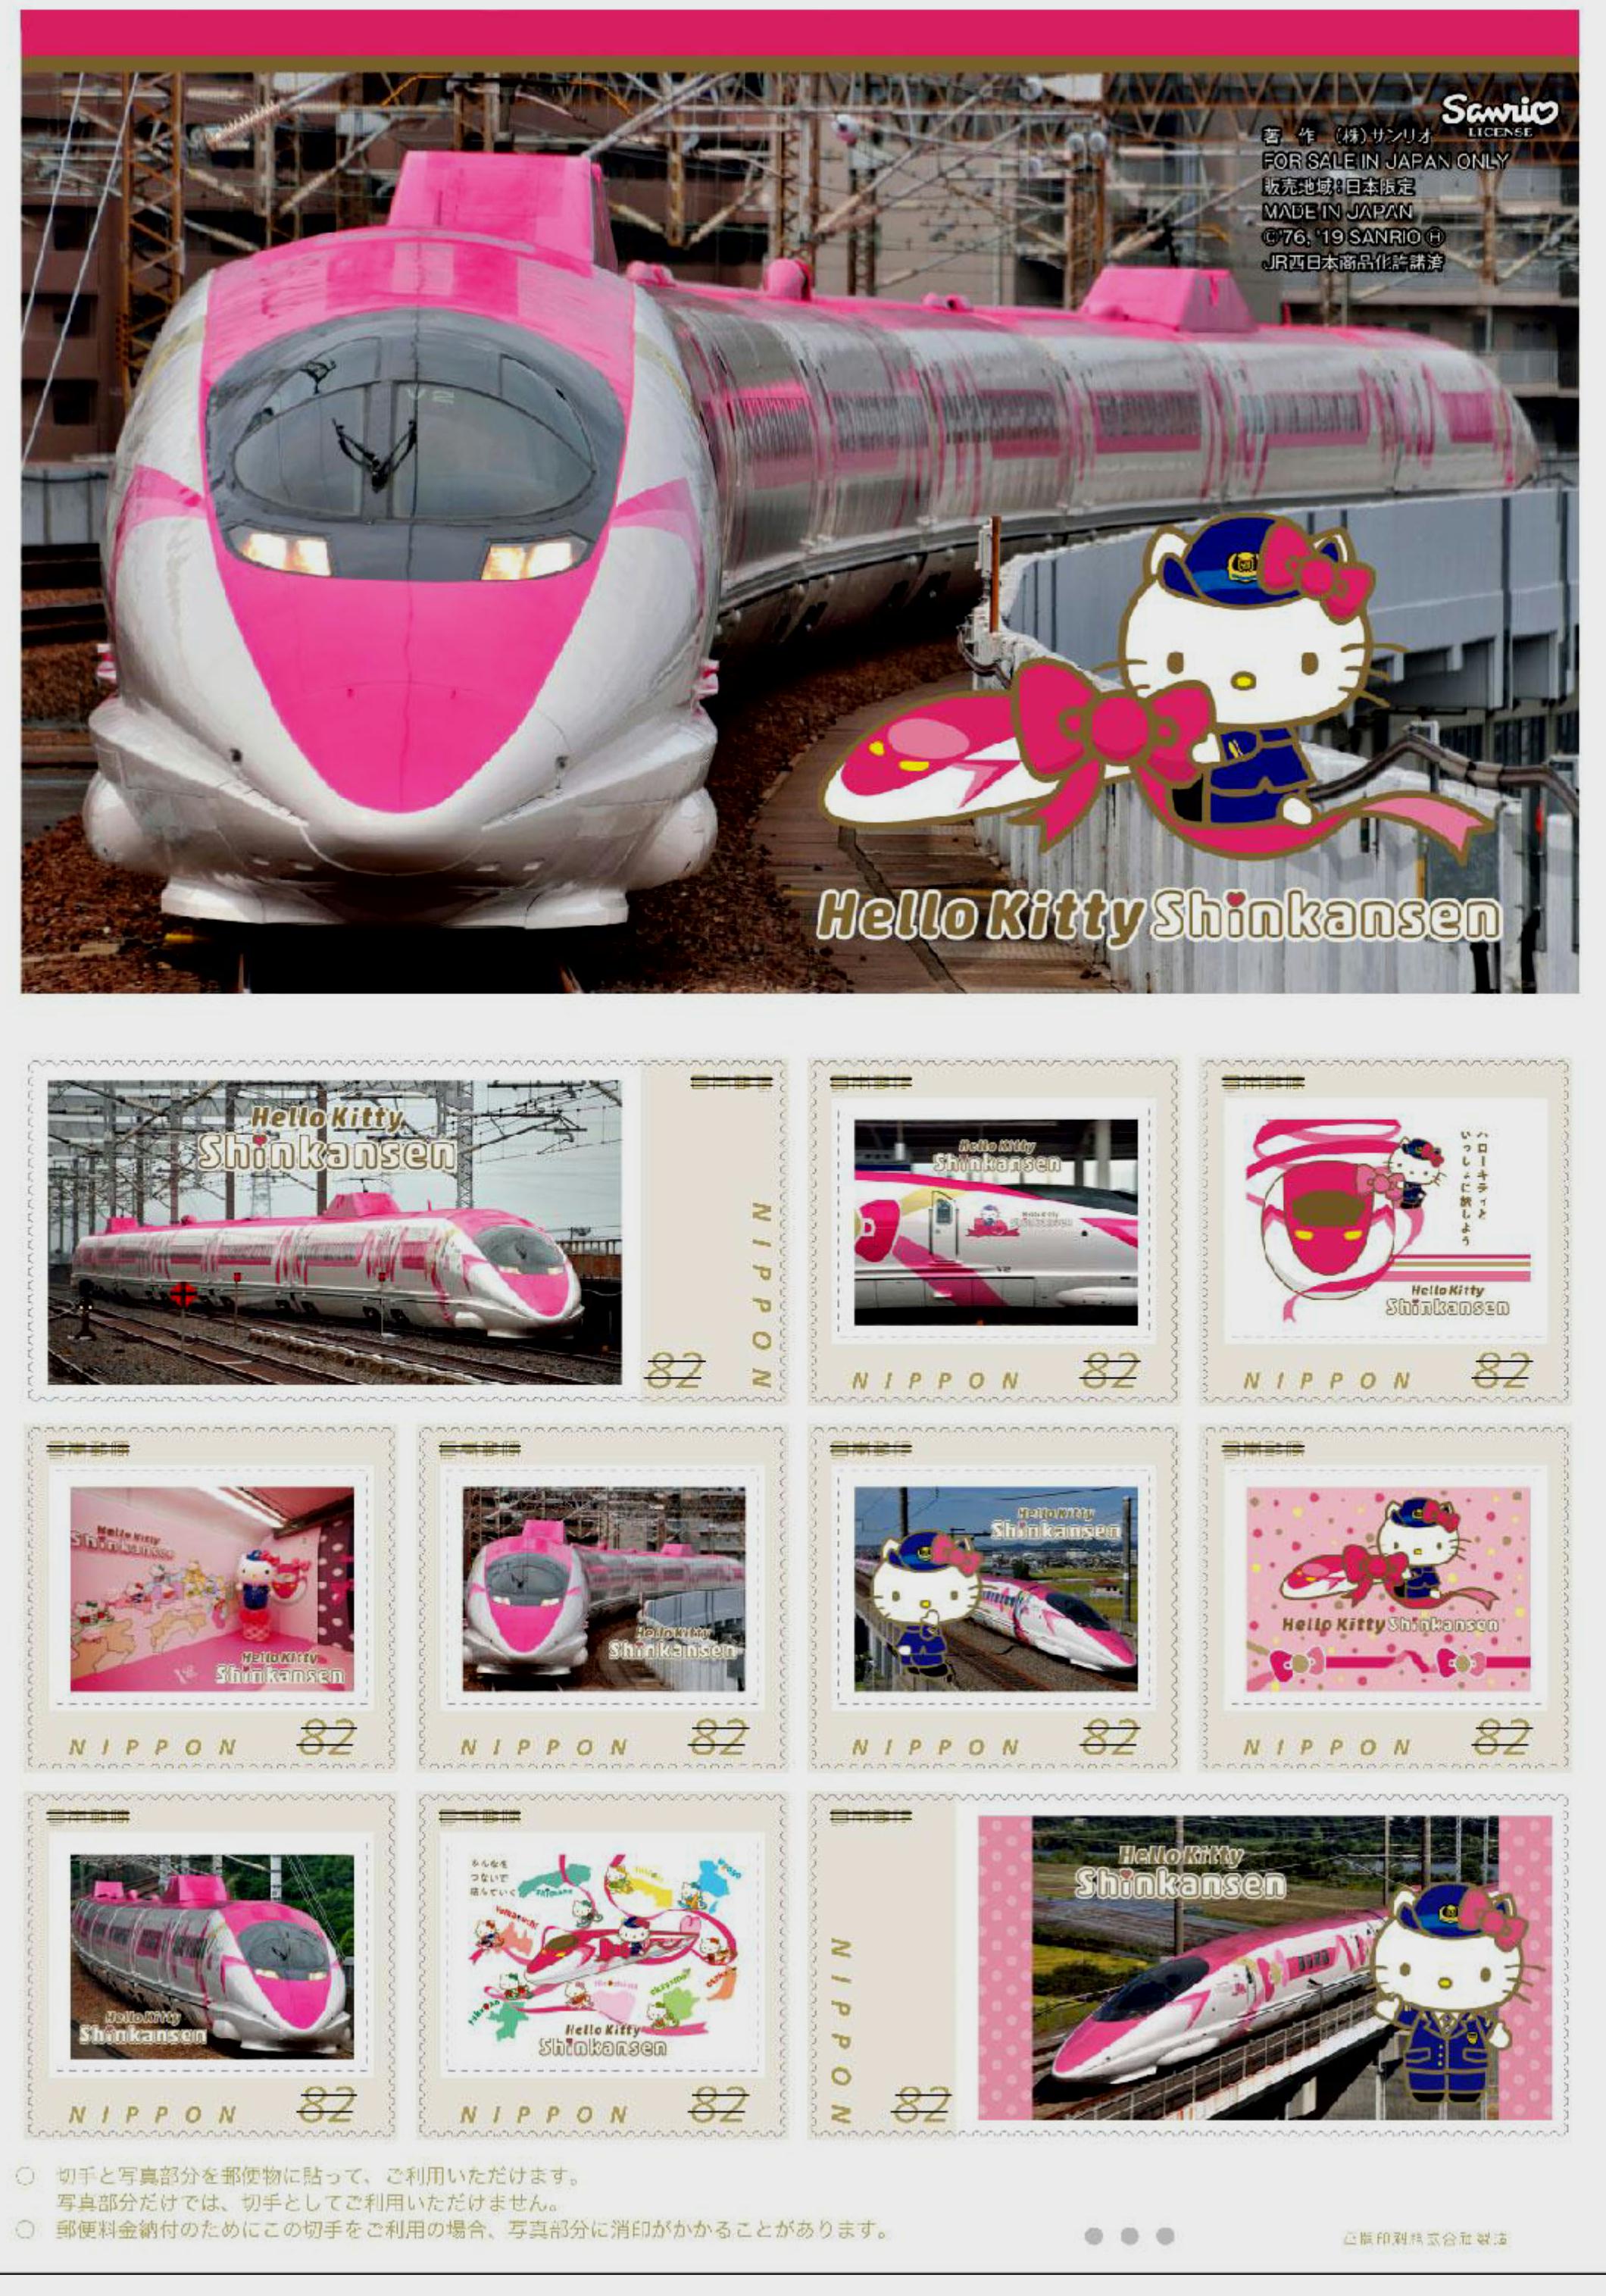 日本郵便 ハローキティ新幹線フレーム切手 販売 19年1月31日 鉄道コム